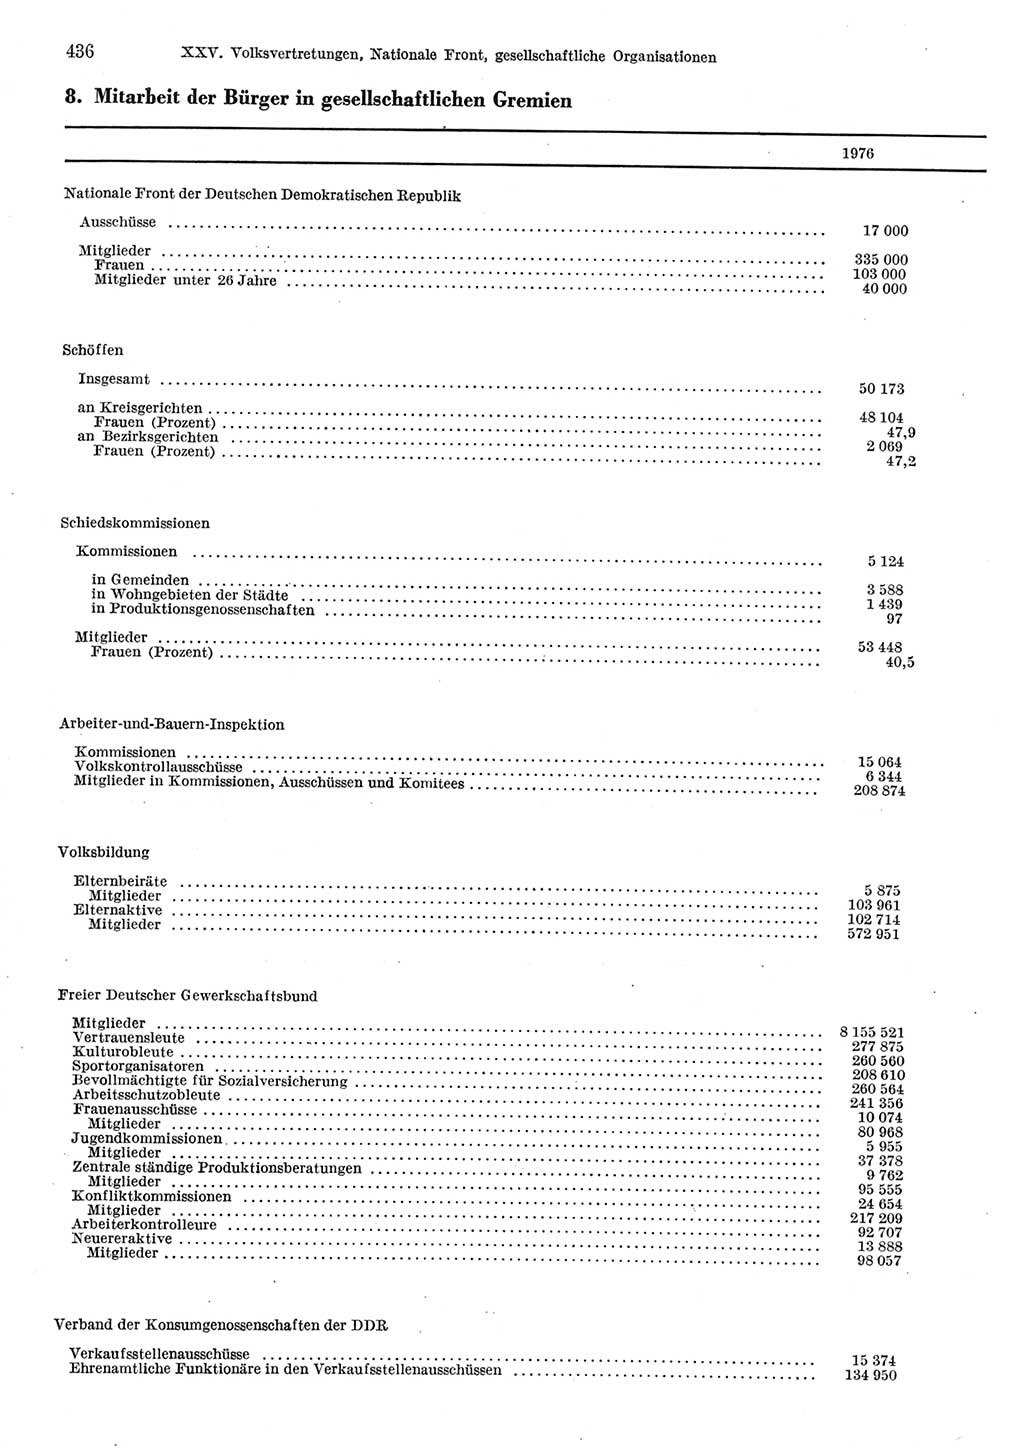 Statistisches Jahrbuch der Deutschen Demokratischen Republik (DDR) 1977, Seite 436 (Stat. Jb. DDR 1977, S. 436)